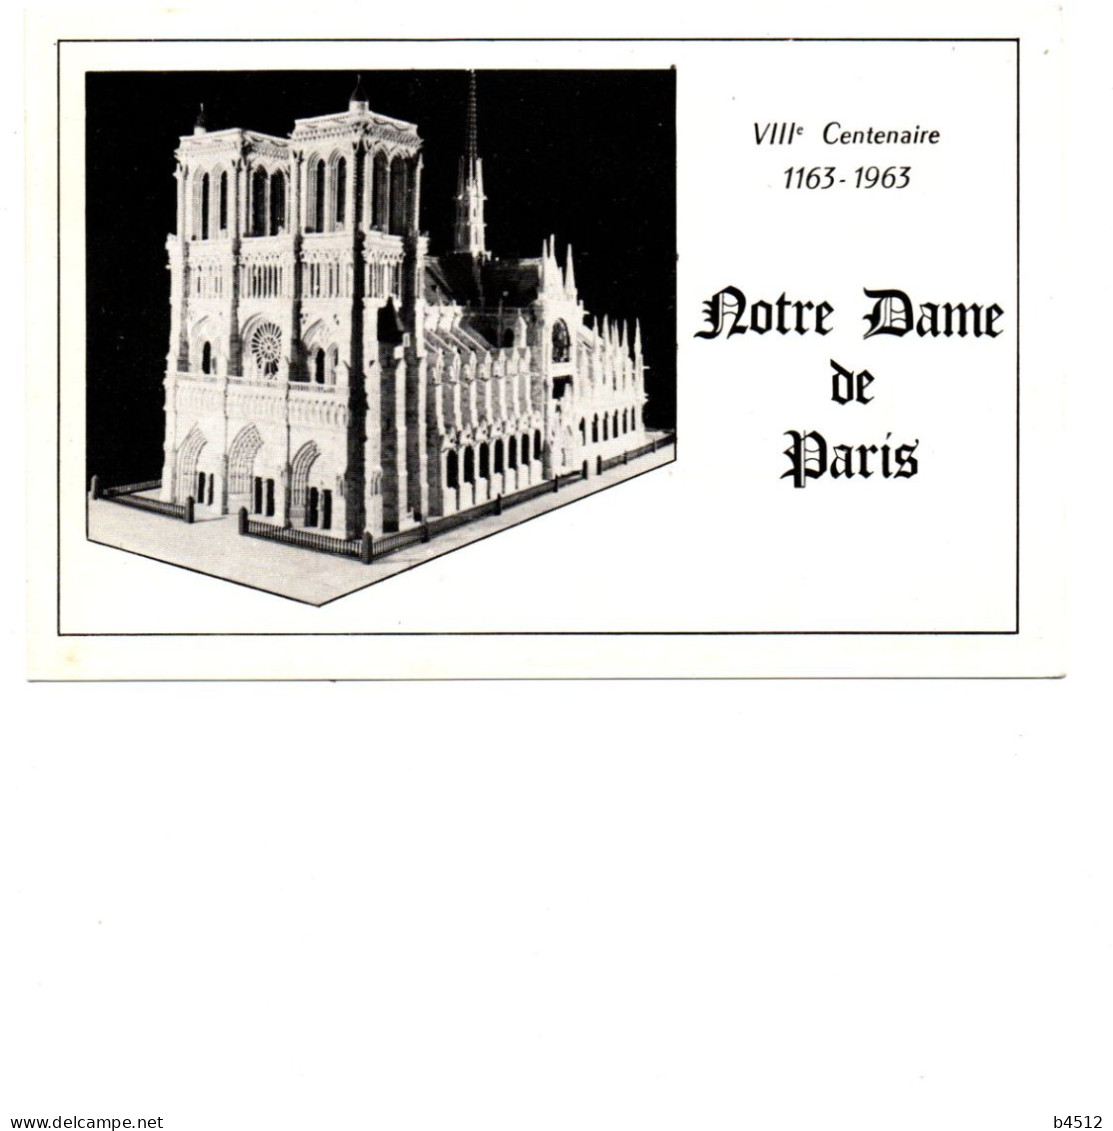 75 PARIS VIII Eme Centenaire De Notre Dame Reproduction Exécutée Par Antoine Gomez Perpignan Avec Des Os à Moelle - Notre Dame De Paris